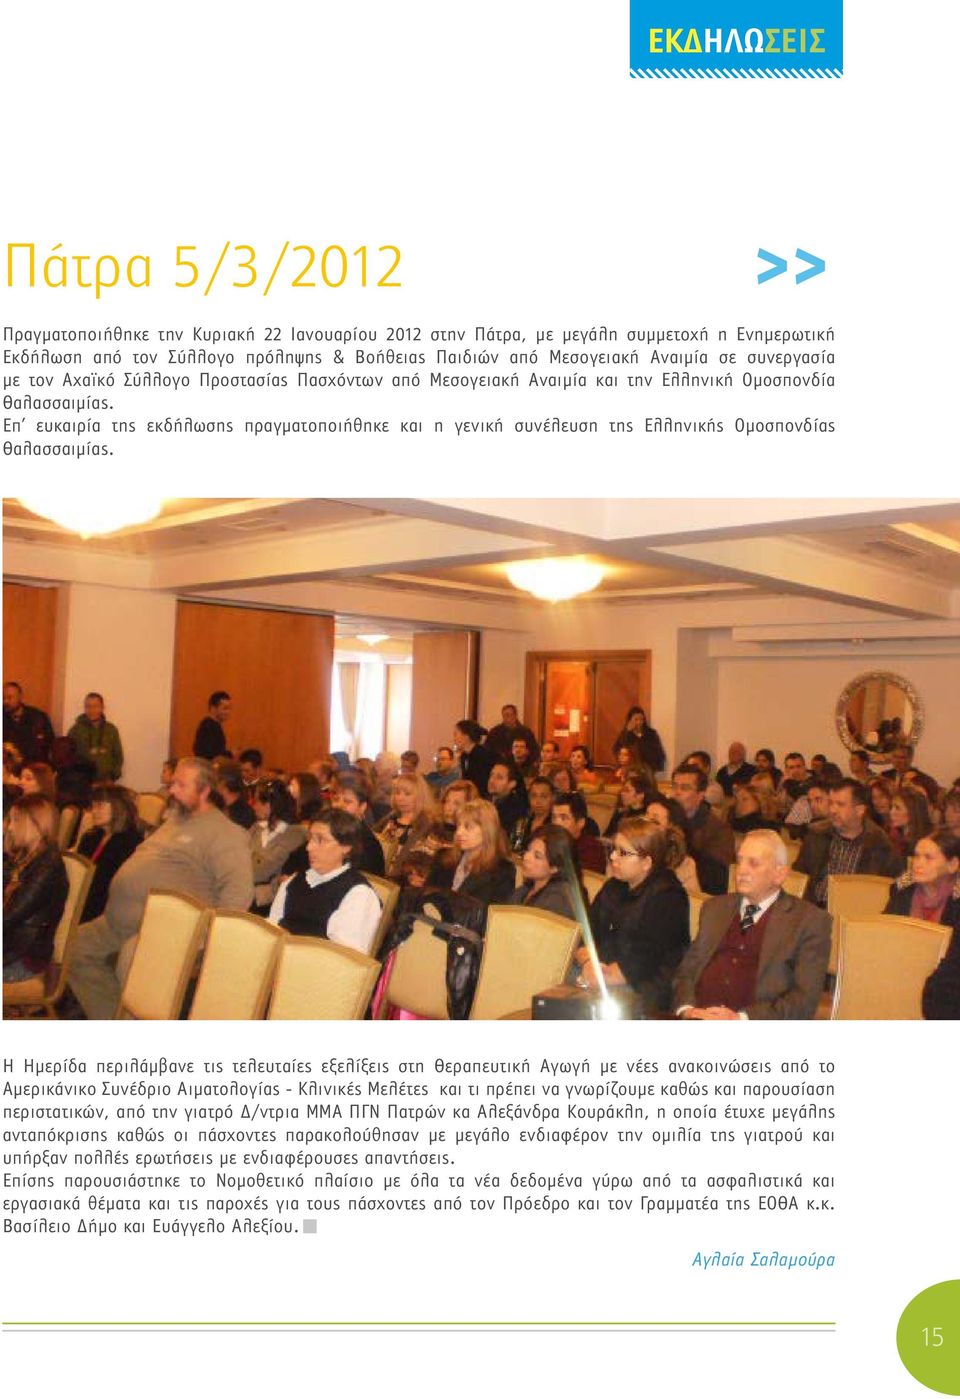 Επ ευκαιρία της εκδήλωσης πραγματοποιήθηκε και η γενική συνέλευση της Ελληνικής Ομοσπονδίας Θαλασσαιμίας.